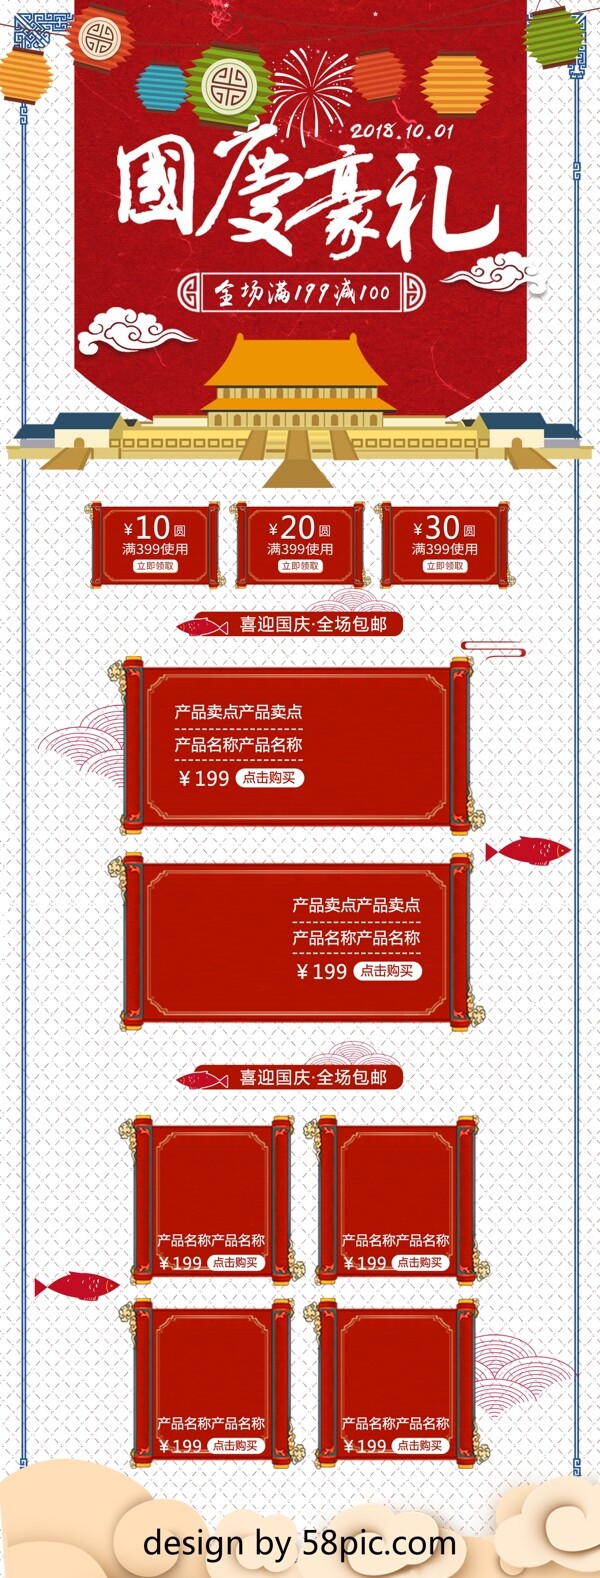 红色中国风卡通国庆节首页模板